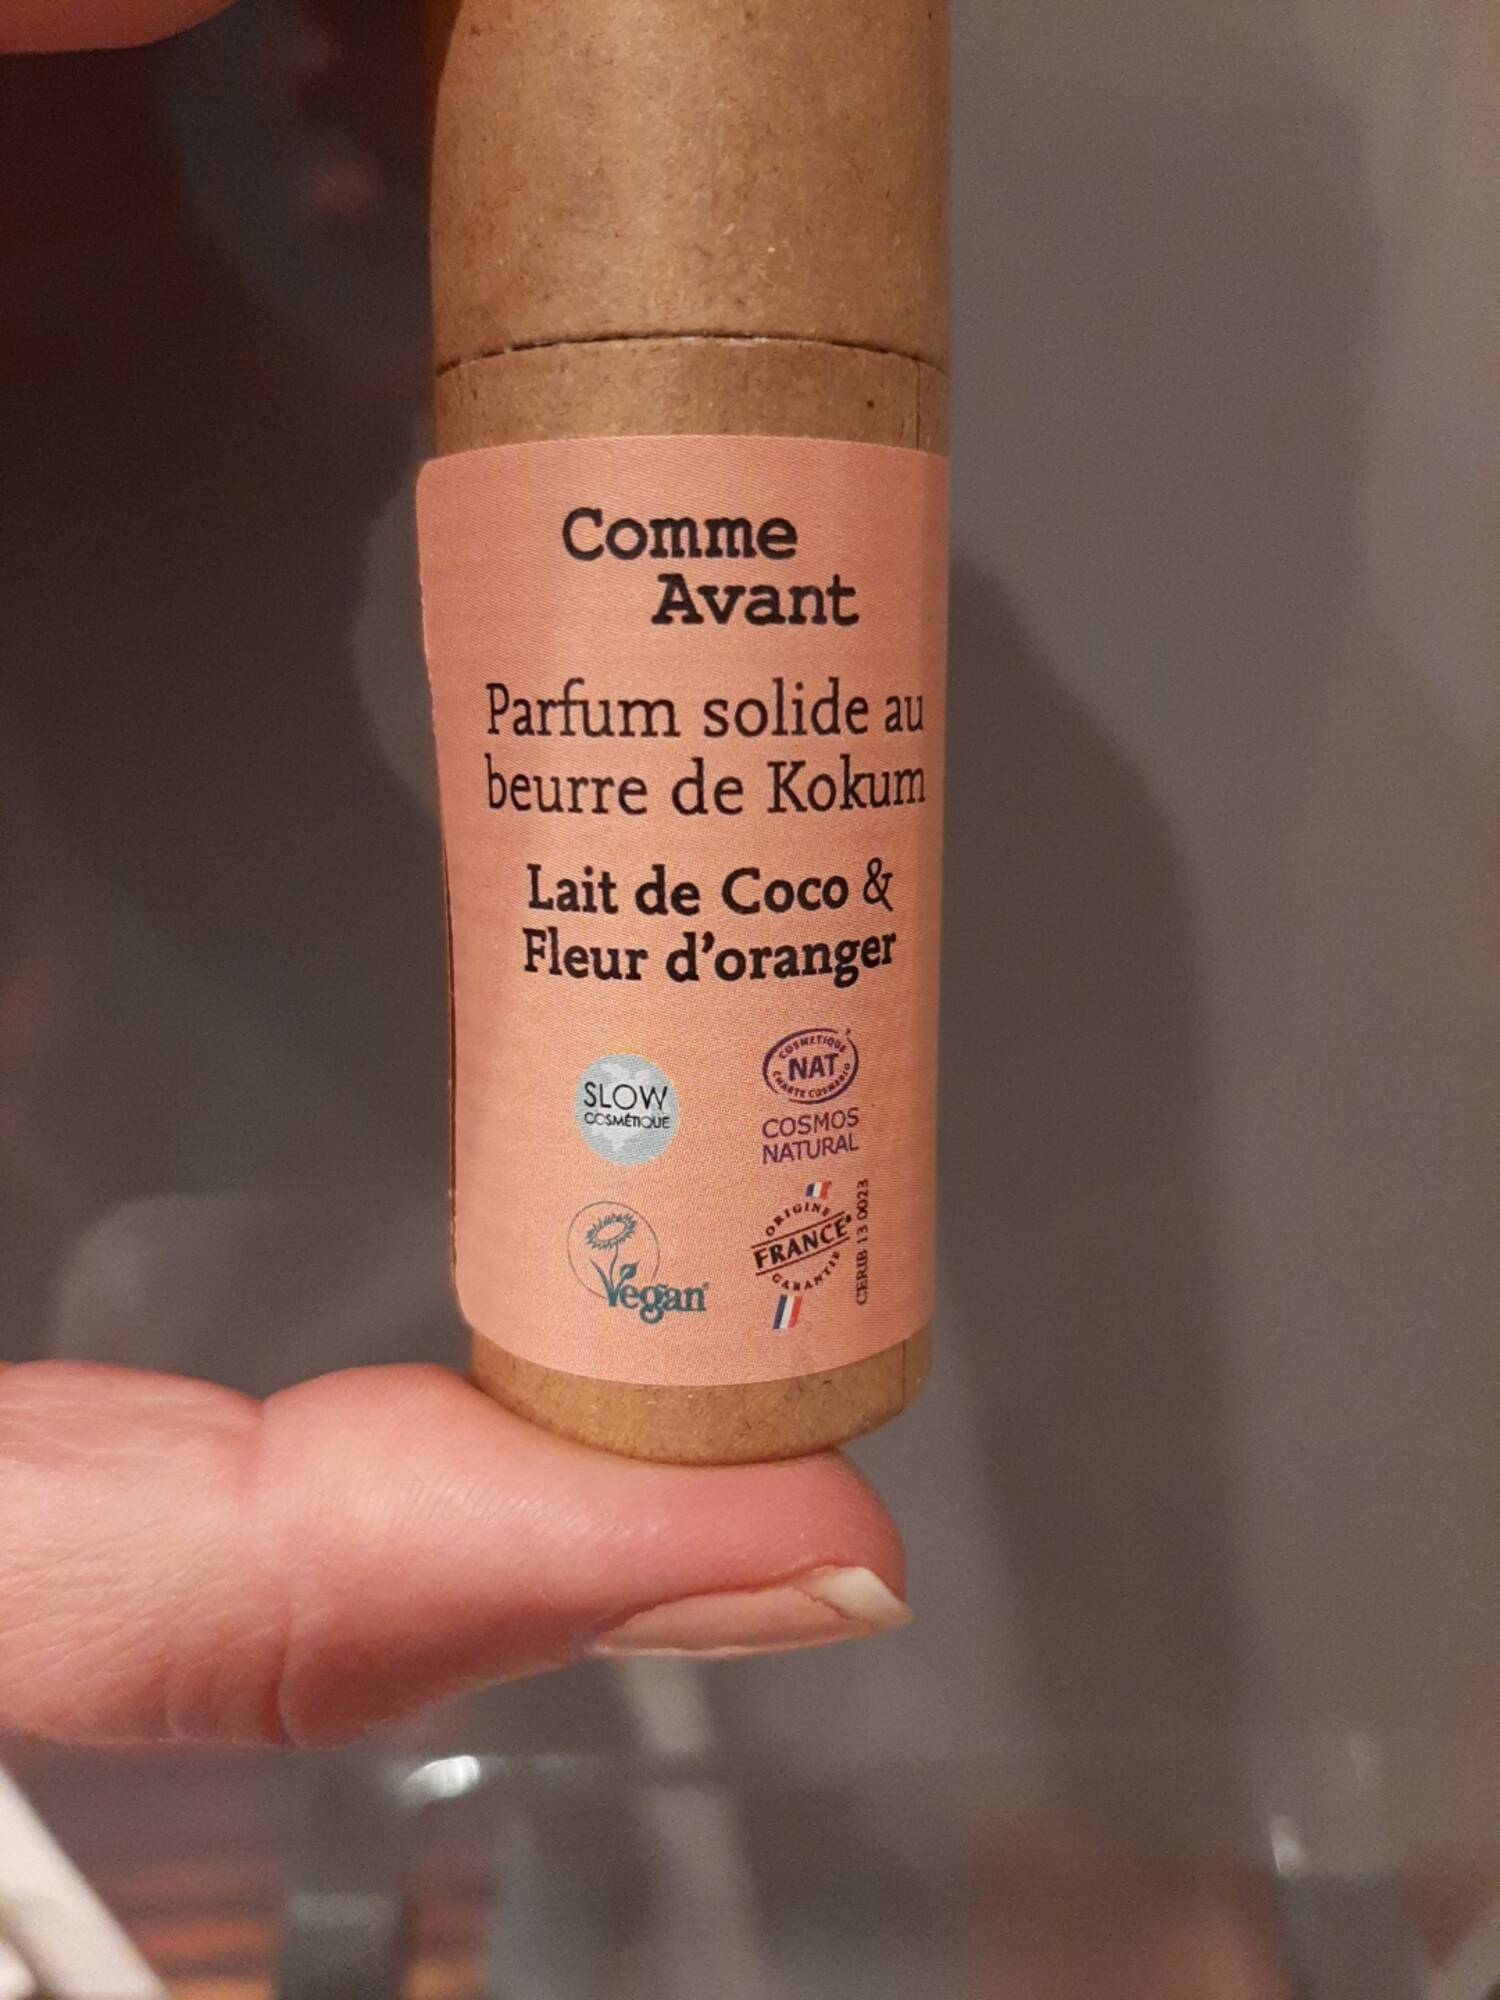 COMME AVANT - Parfum solide au beurre de kokum